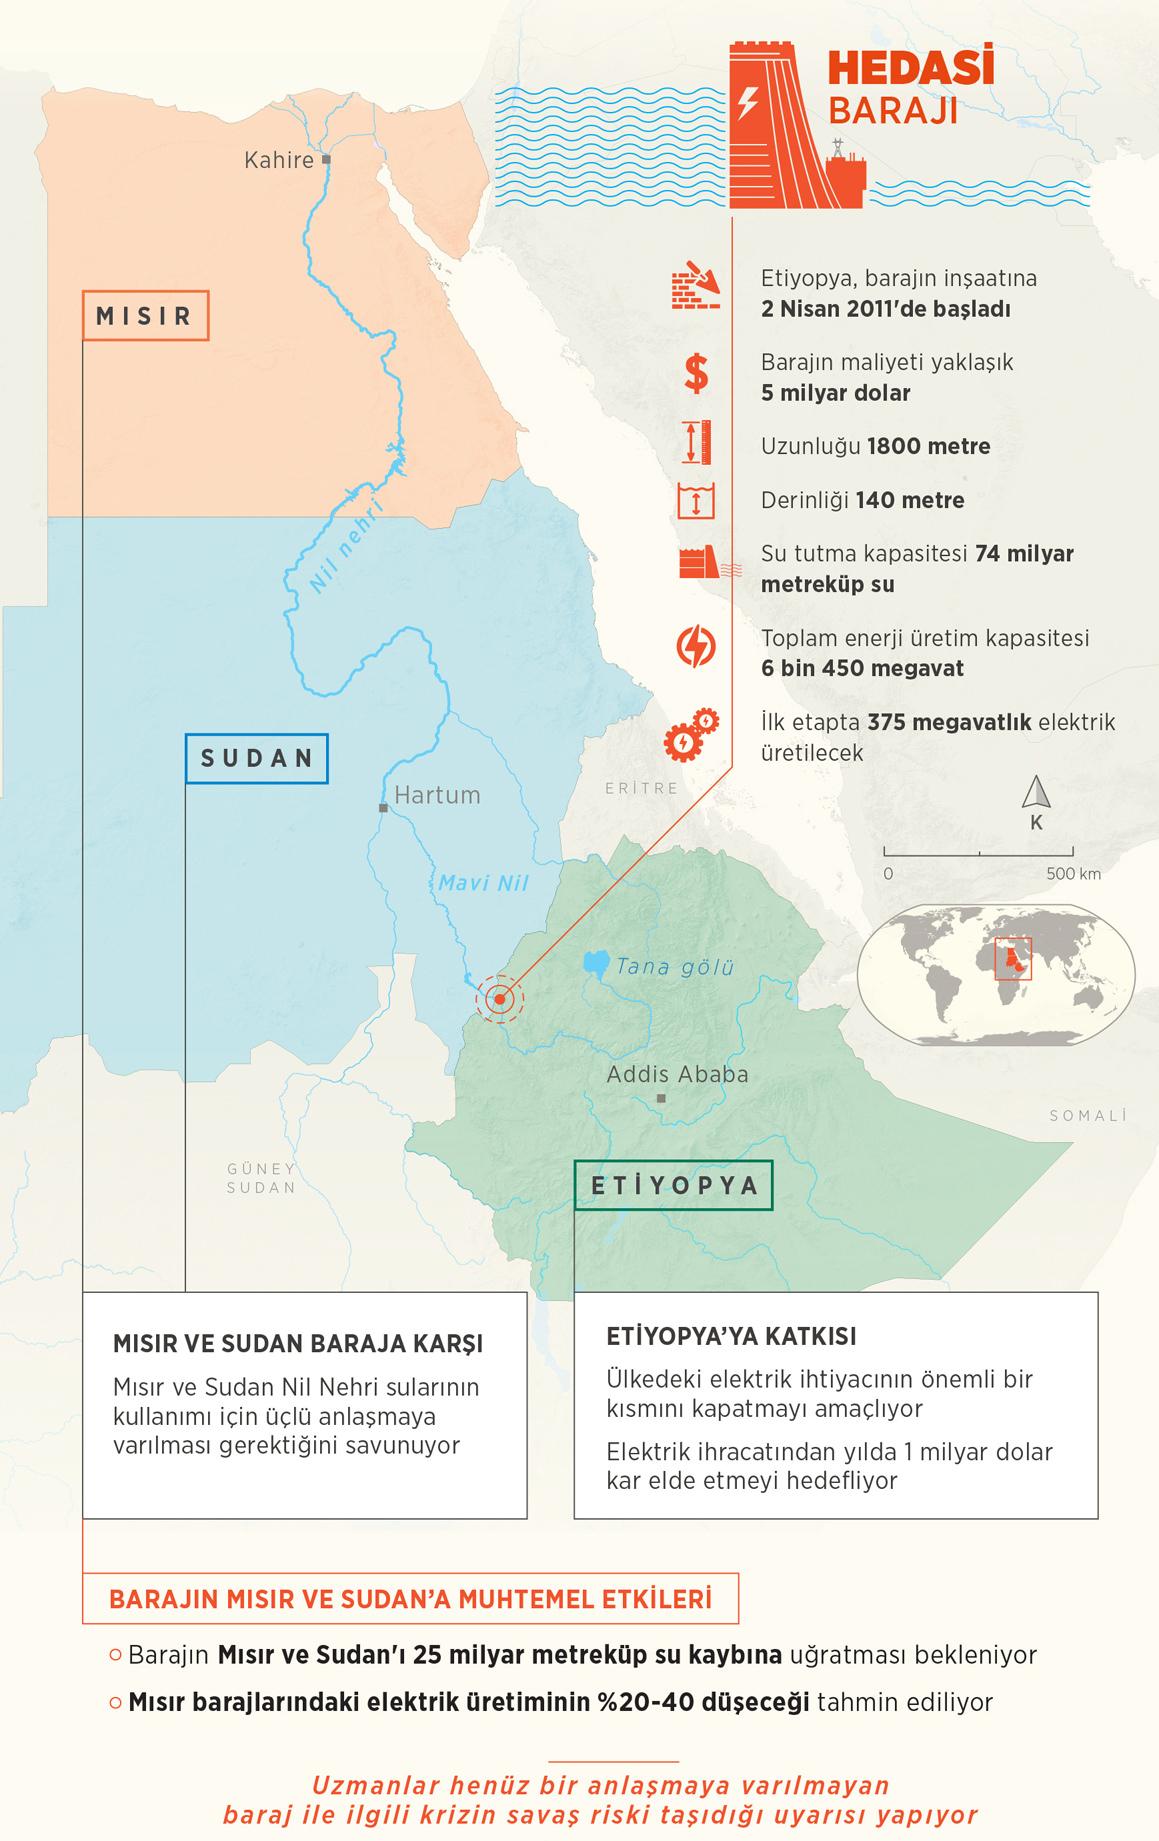 Etiyopya ile kriz aşılamadı! Mısır'dan Hedasi Barajı açıklaması